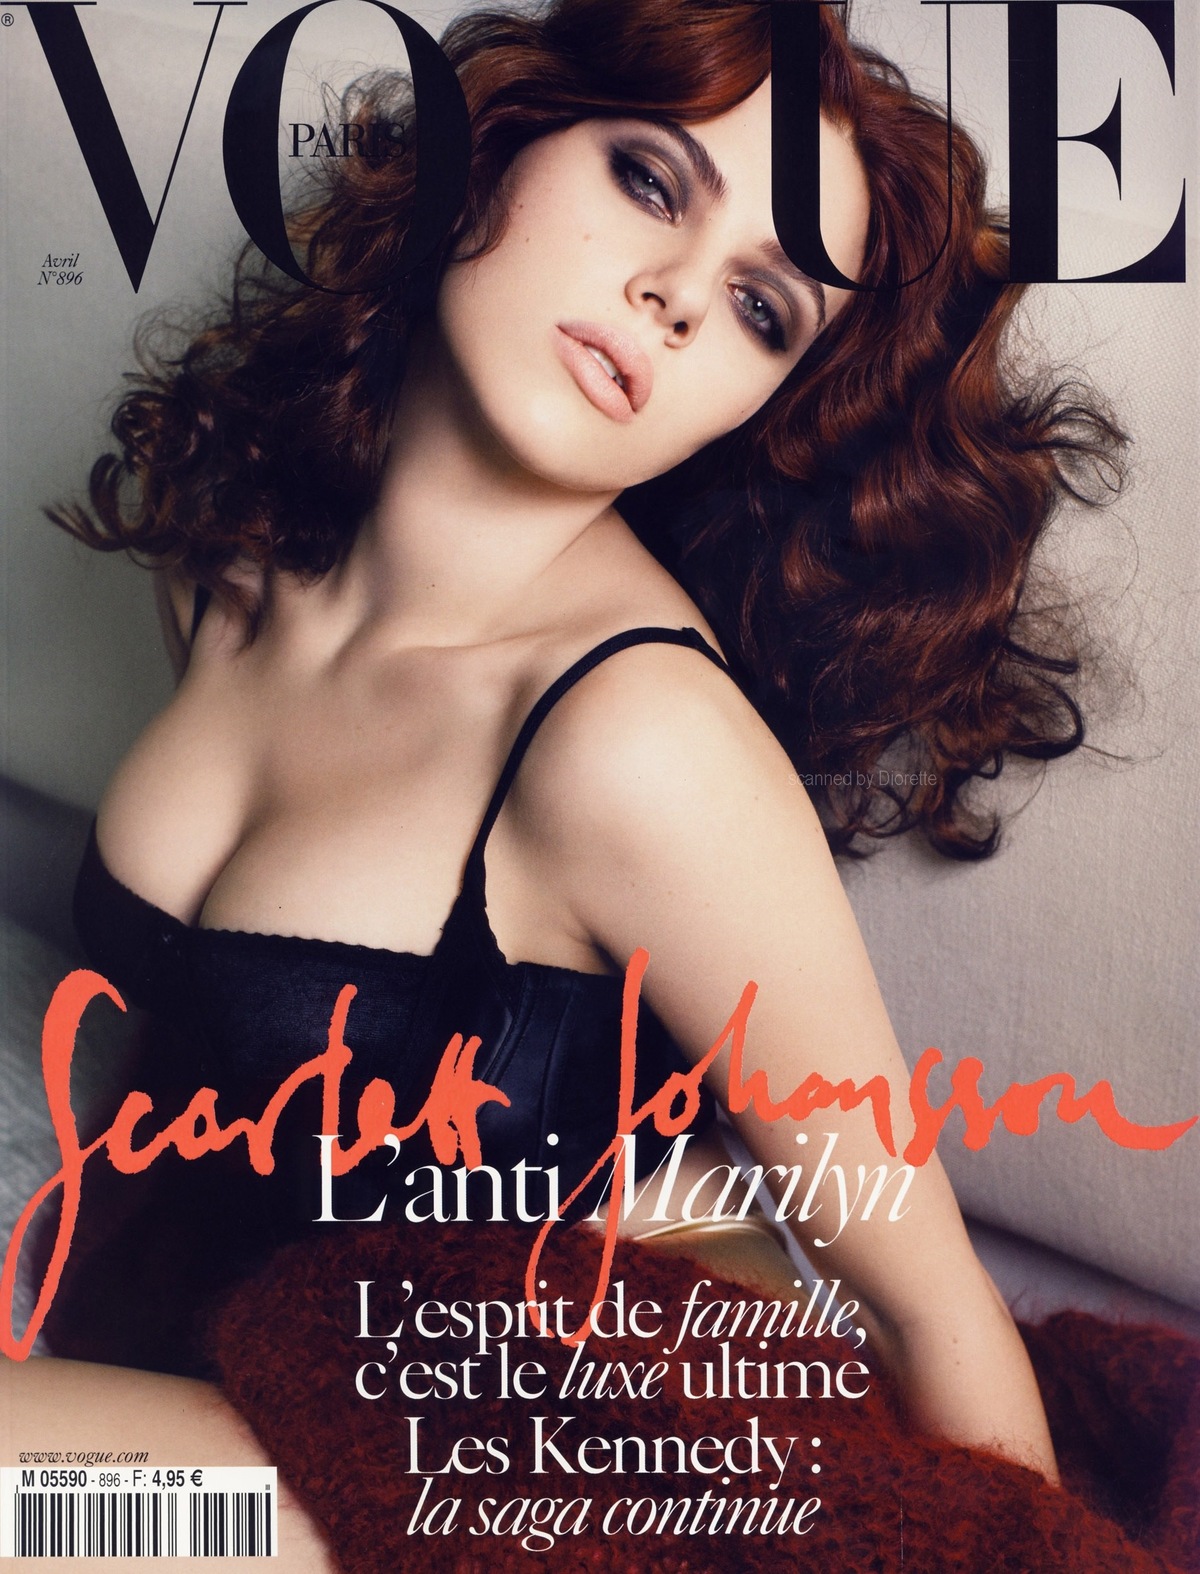 Скарлетт Йоханссон  в журнале Vogue. Франция. Апрель 2009